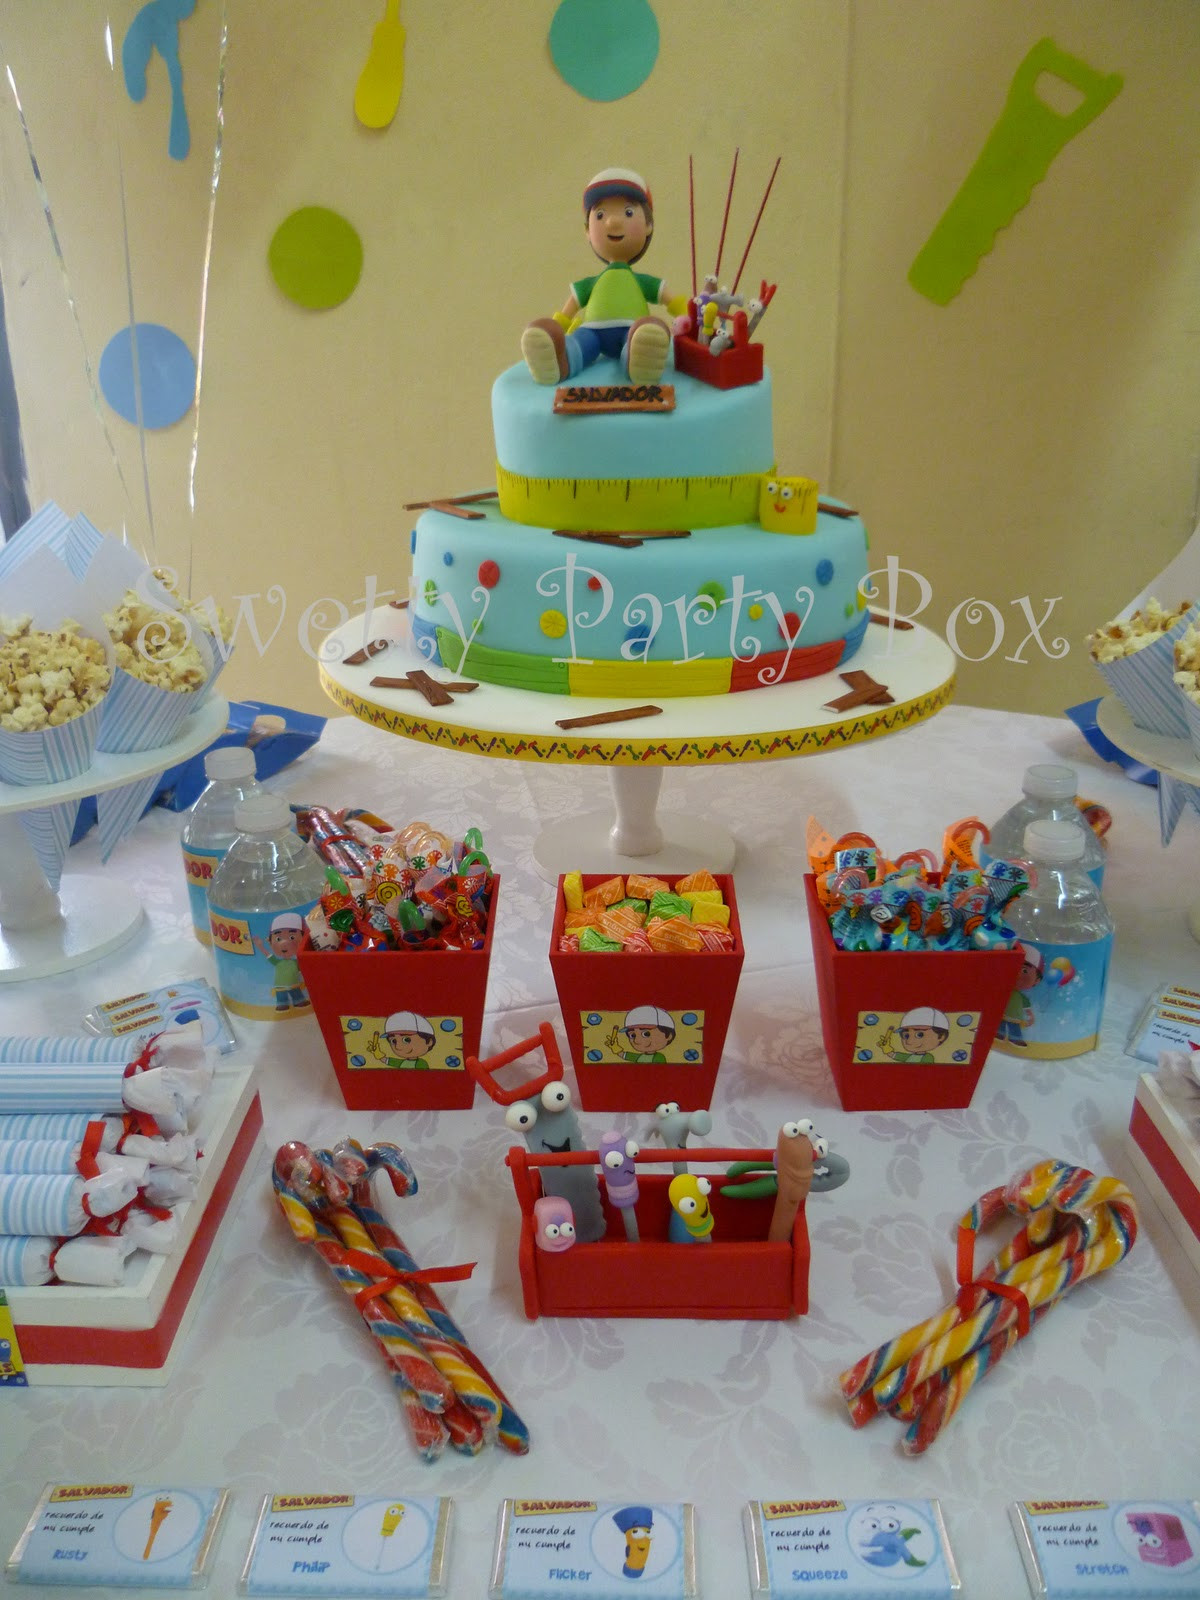 Handy Manny Birthday Decorations
 Sweet Party Box CuMplE de SalvAdoR Manny a la Obra